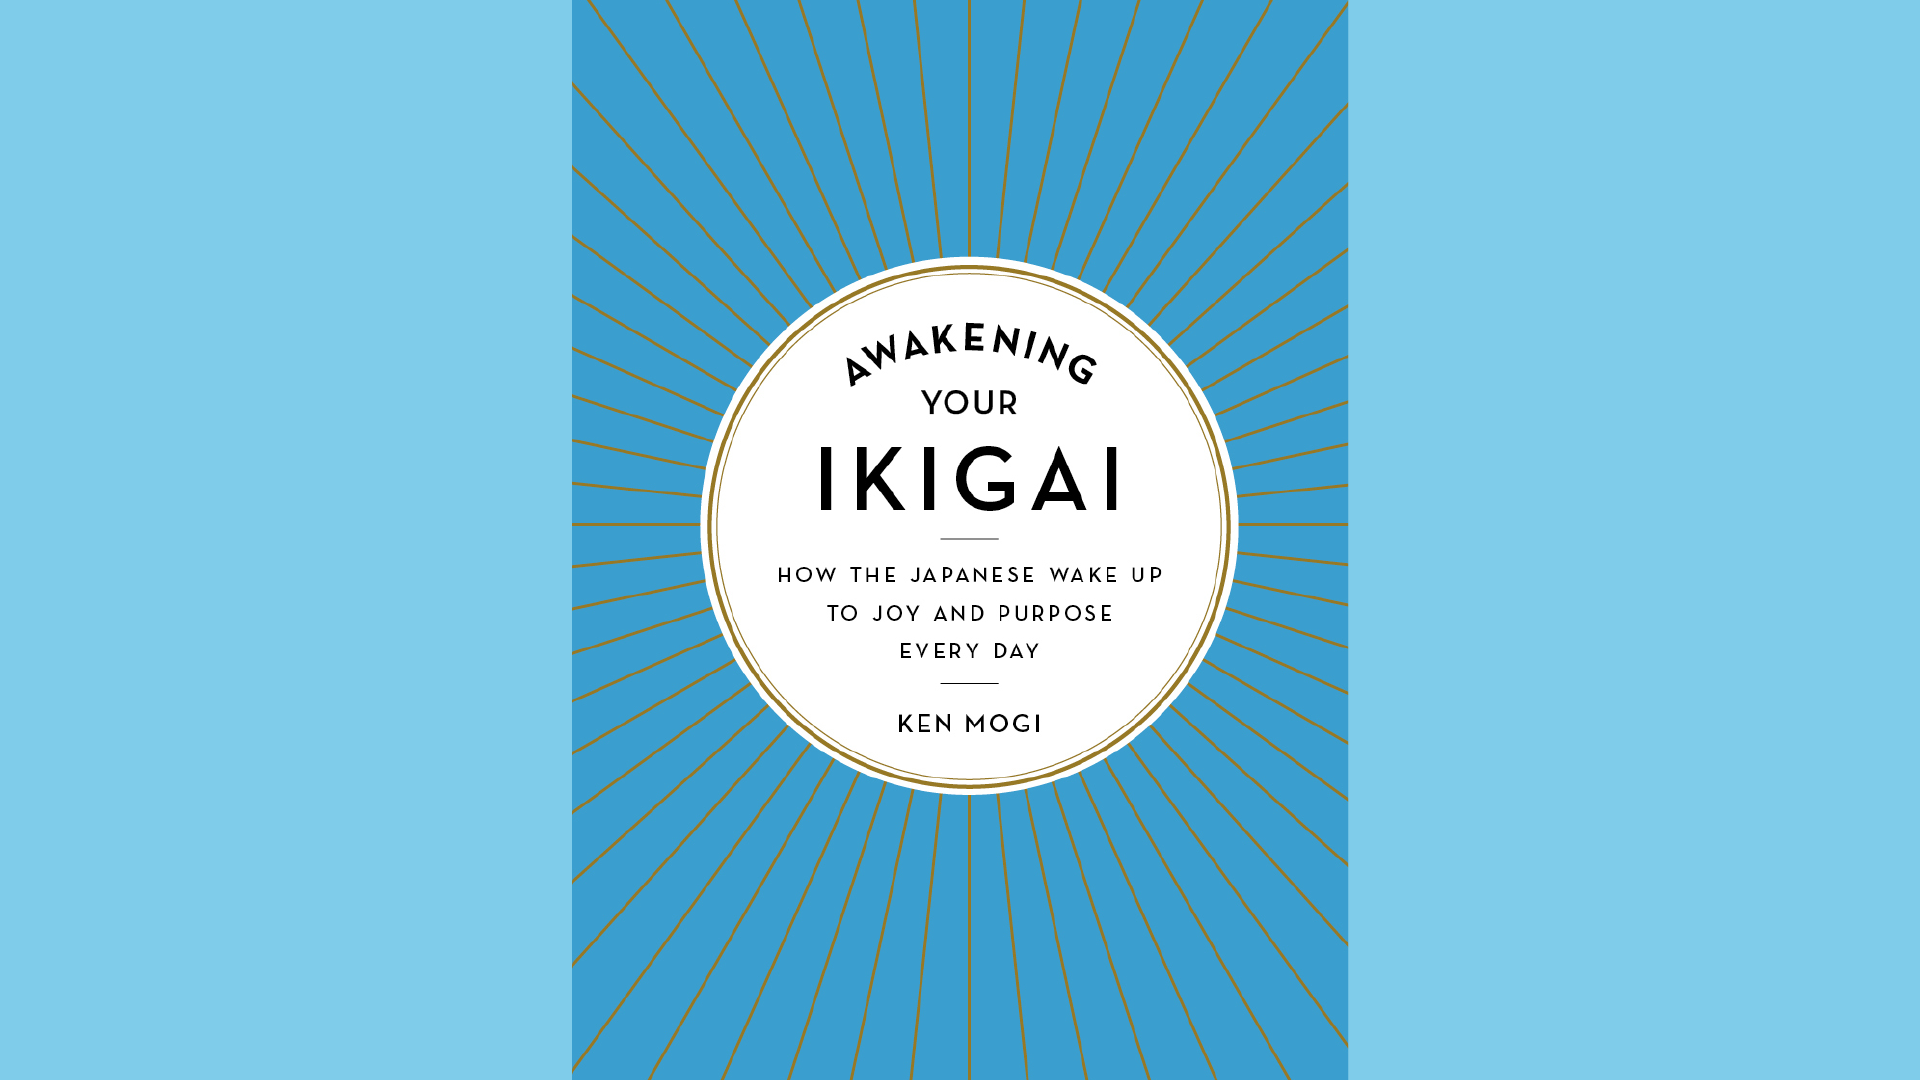 Summary: Awakening Your Ikigai by Ken Mogi